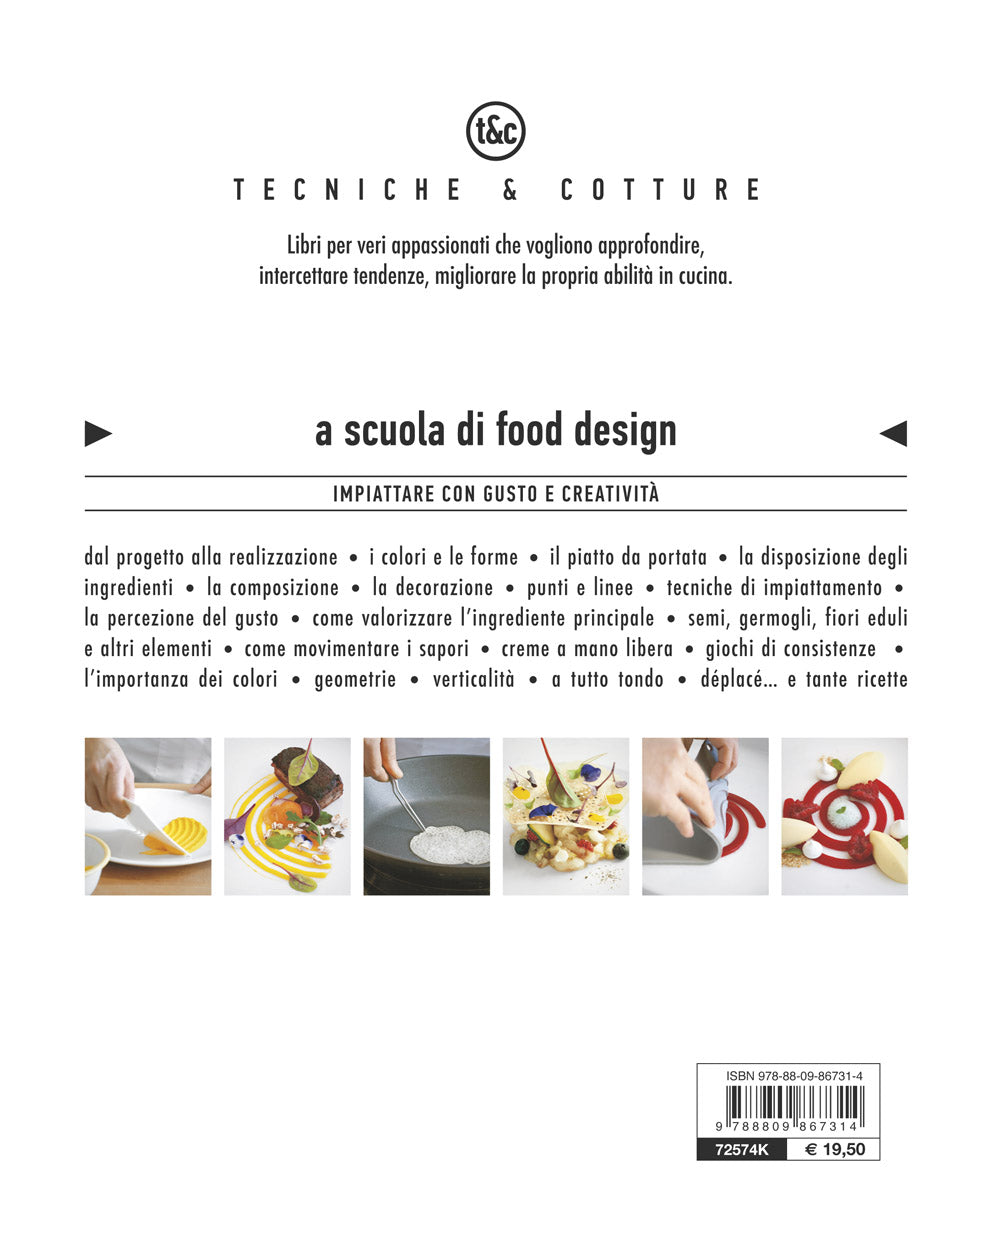 A scuola di Food Design::Impiattare con gusto e creatività